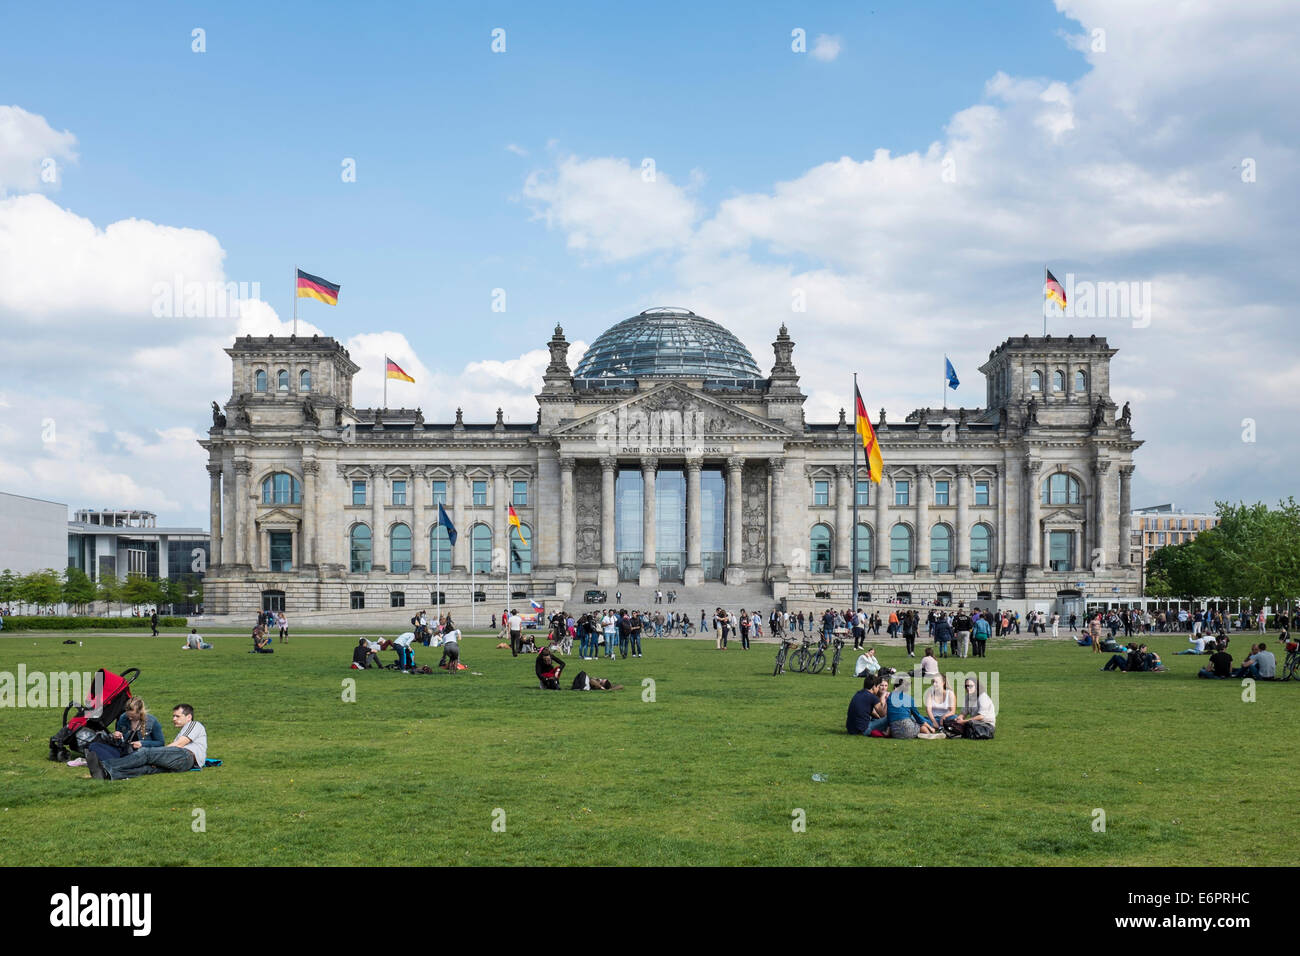 Reichstag, seat of the German parliament, Platz der Republik, Mitte, Berlin, Germany Stock Photo